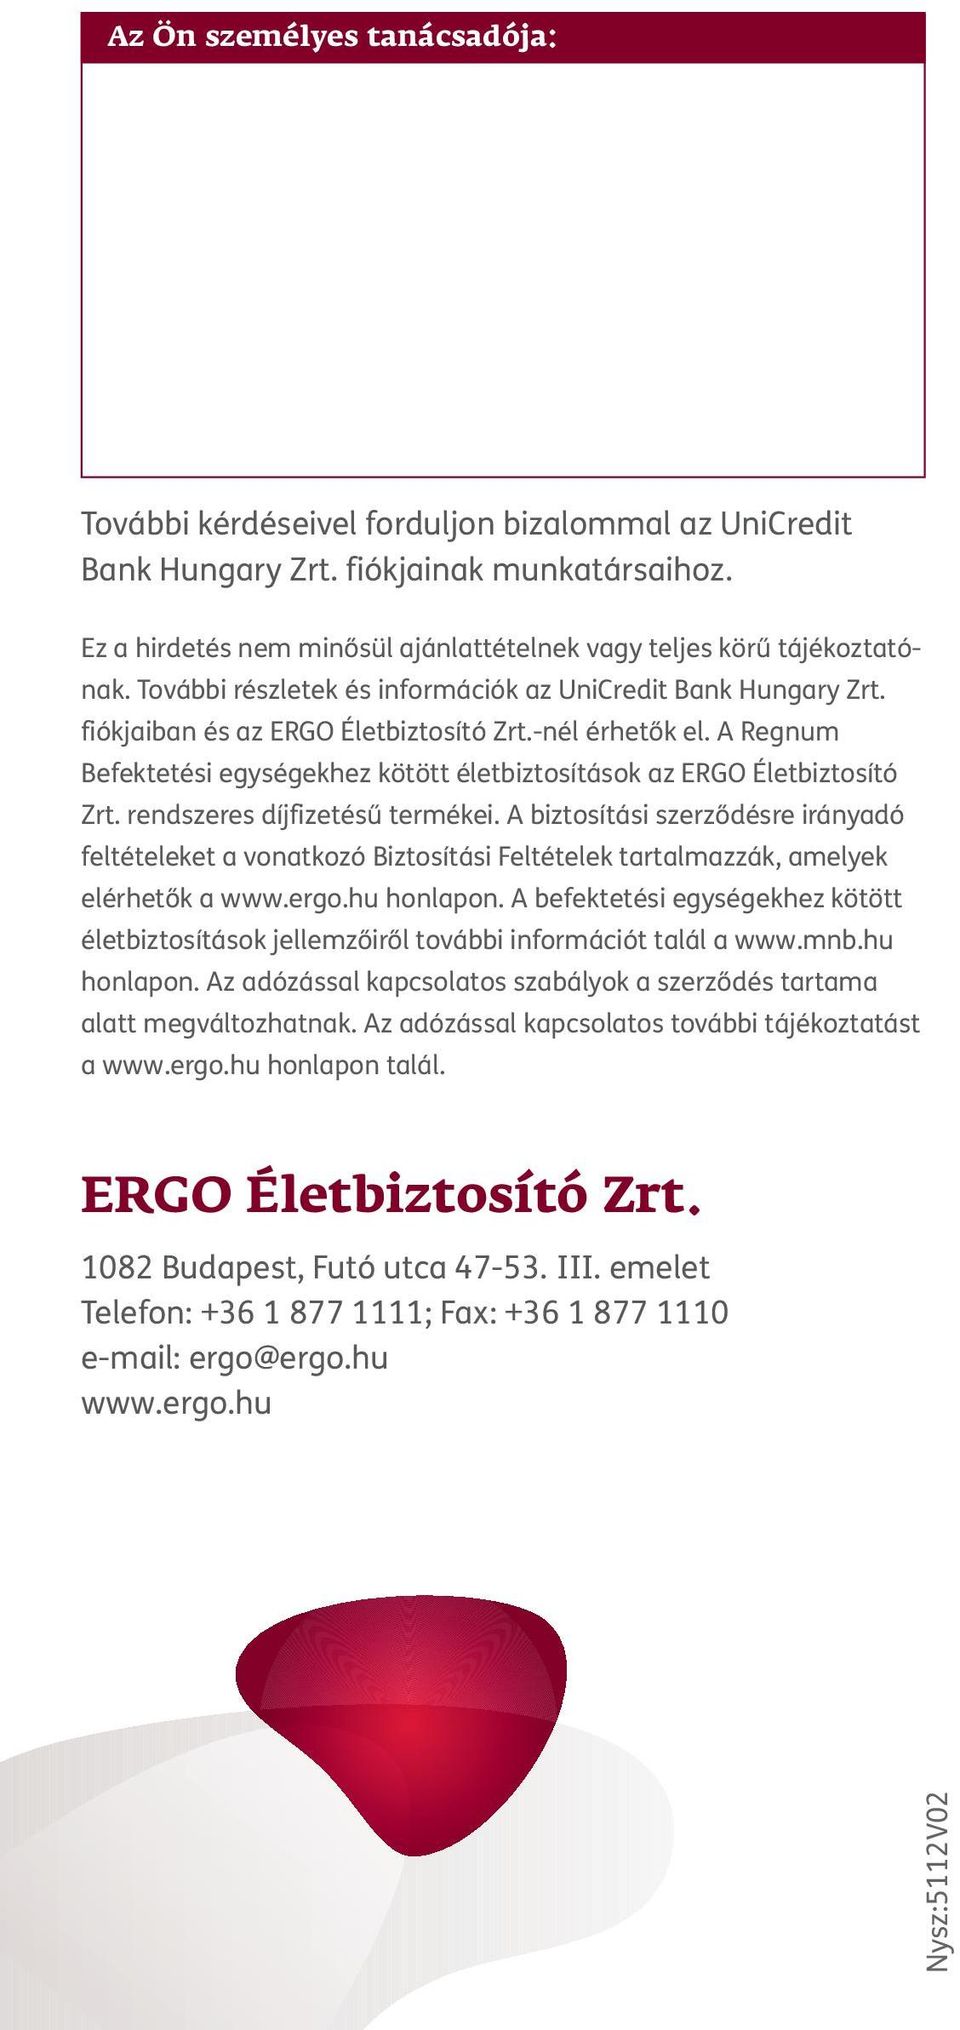 A Regnum Befektetési egységekhez kötött életbiztosítások az ERGO Életbiztosító Zrt. rendszeres díjfizetésű termékei.